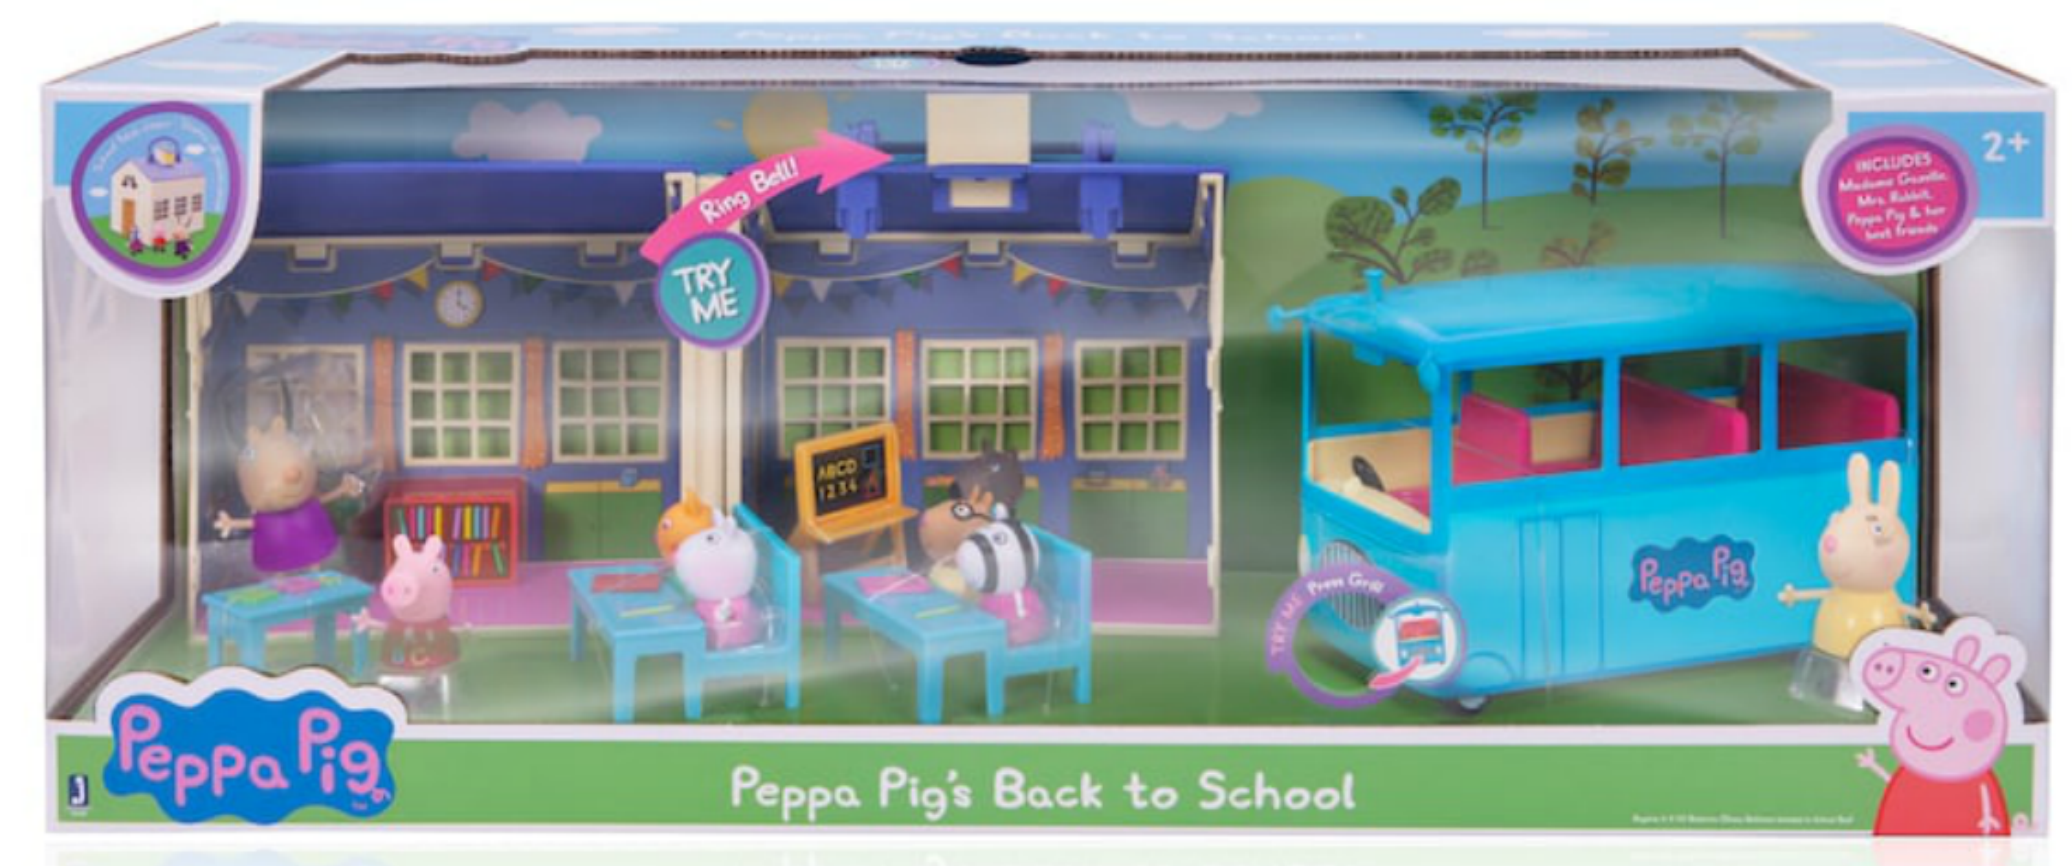 peppa pig school playset